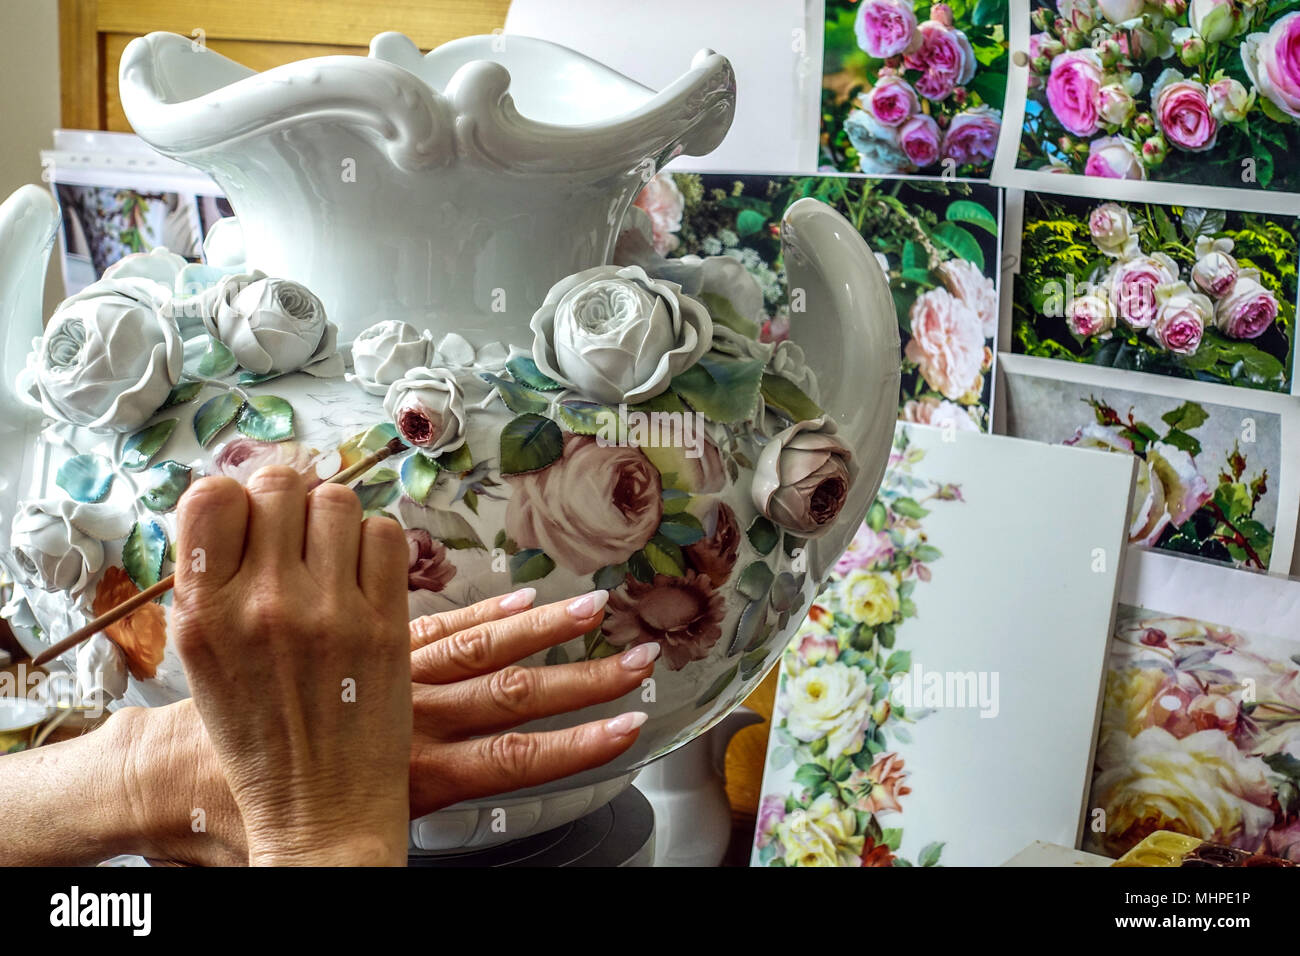 Atelier de Meissen usine de porcelaine, femme décoration vase porcelaine Saxe, vase Meissen Allemagne Banque D'Images